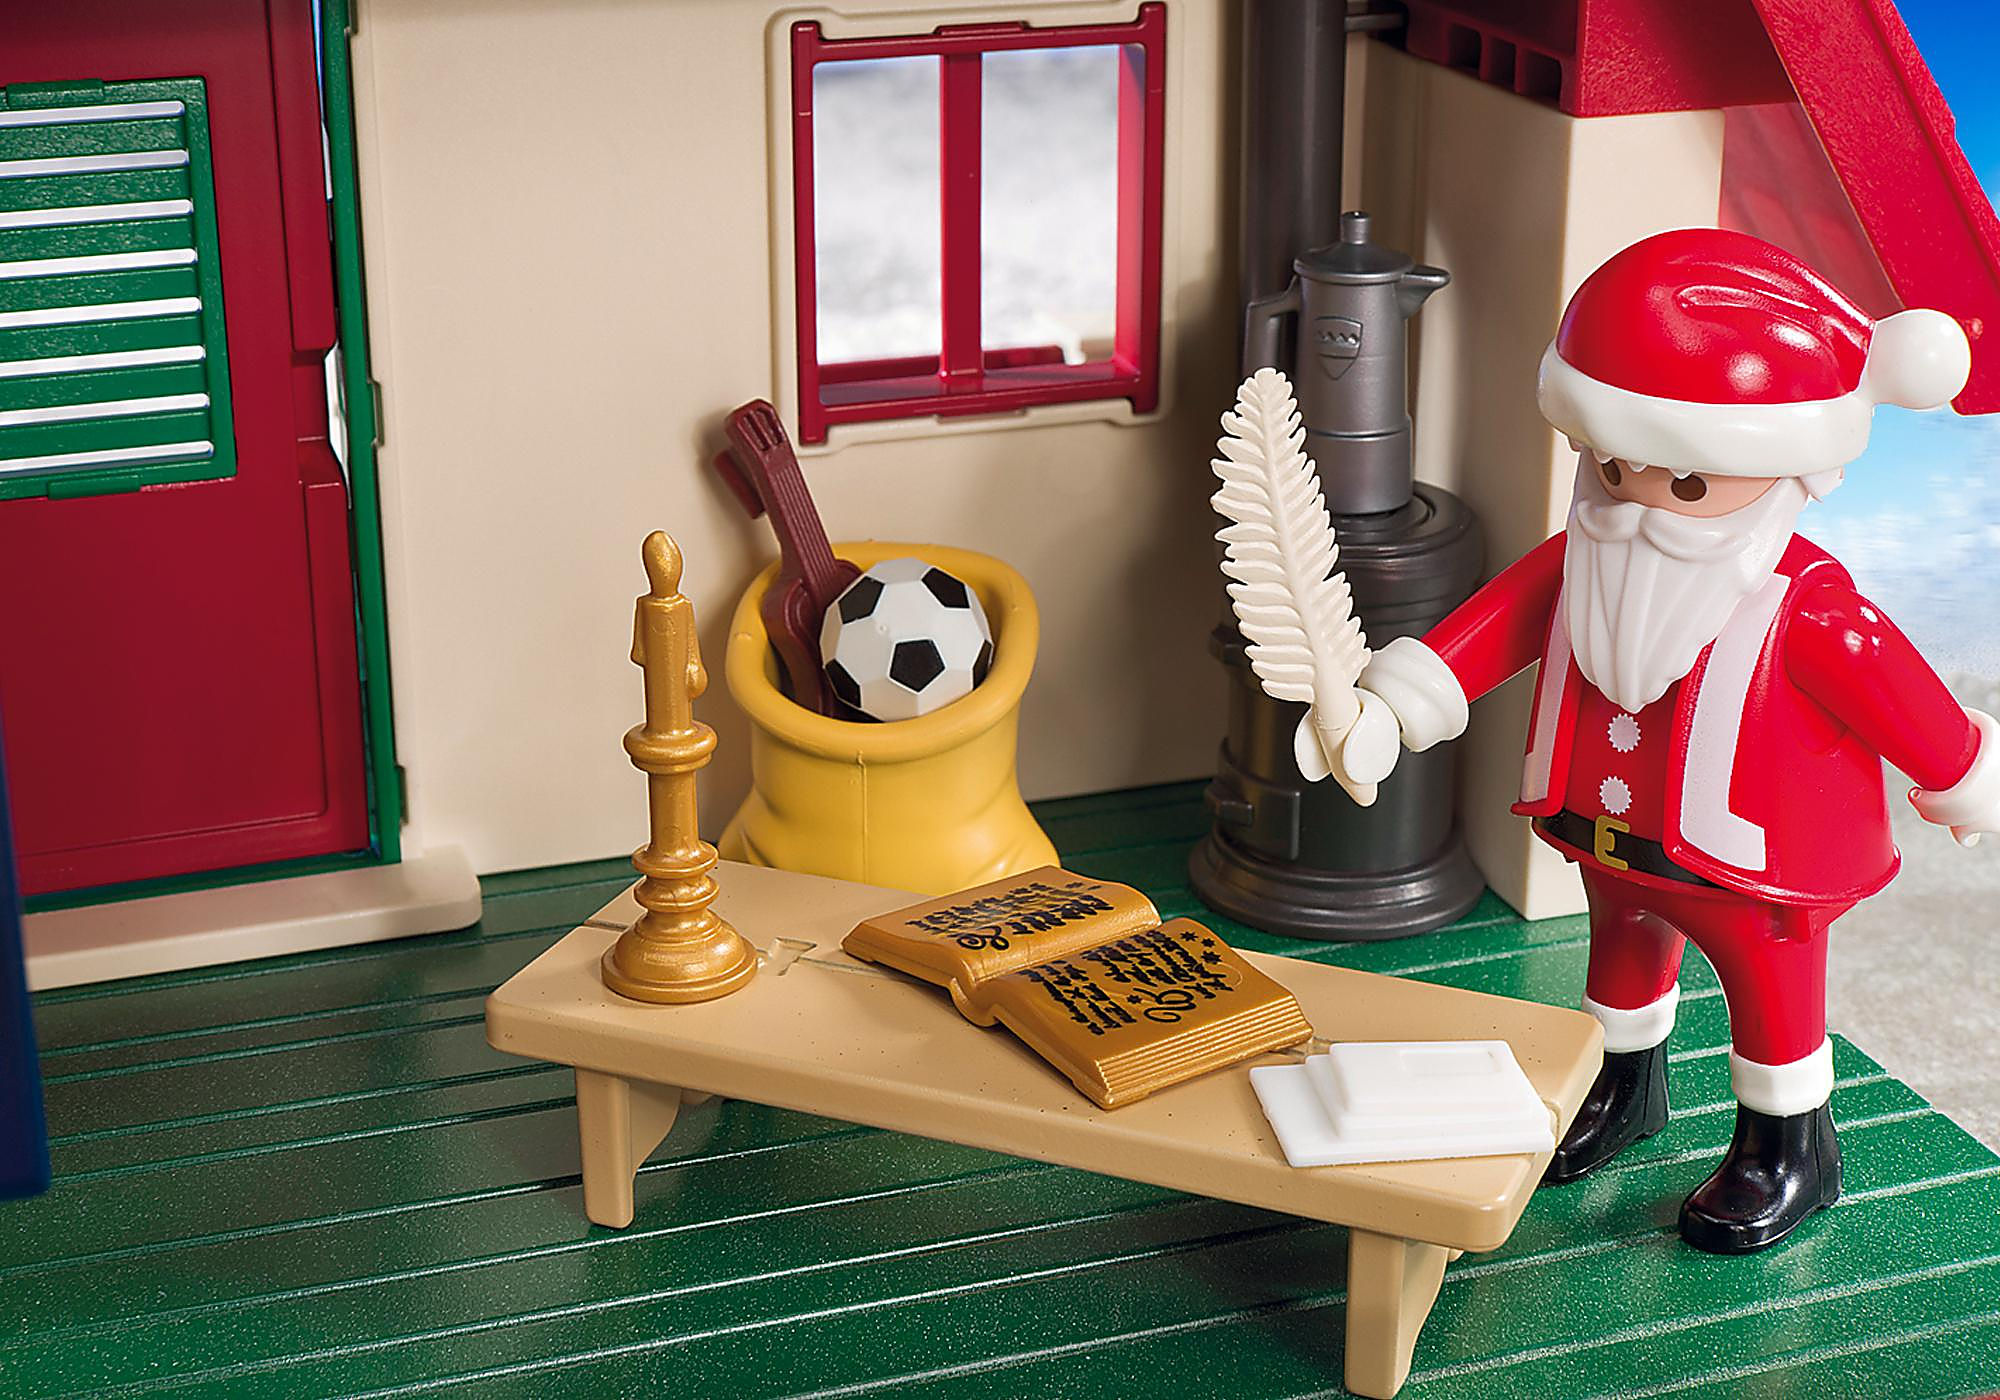 Soldes Playmobil Maisonnette du Père Noël (5976) 2024 au meilleur prix sur